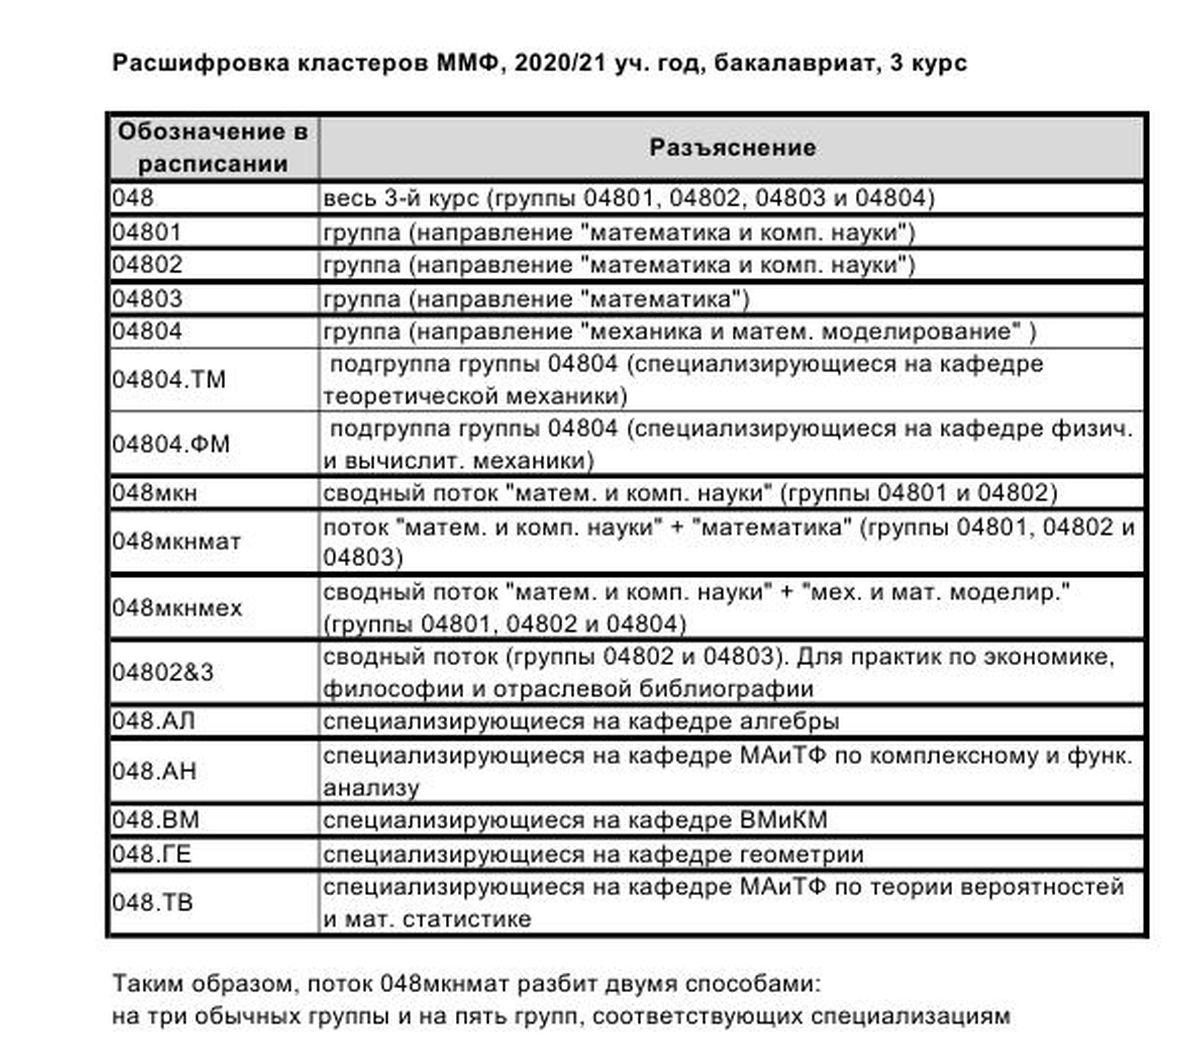 Кластеры ММФ 2020-21 расшифровка_3.jpg